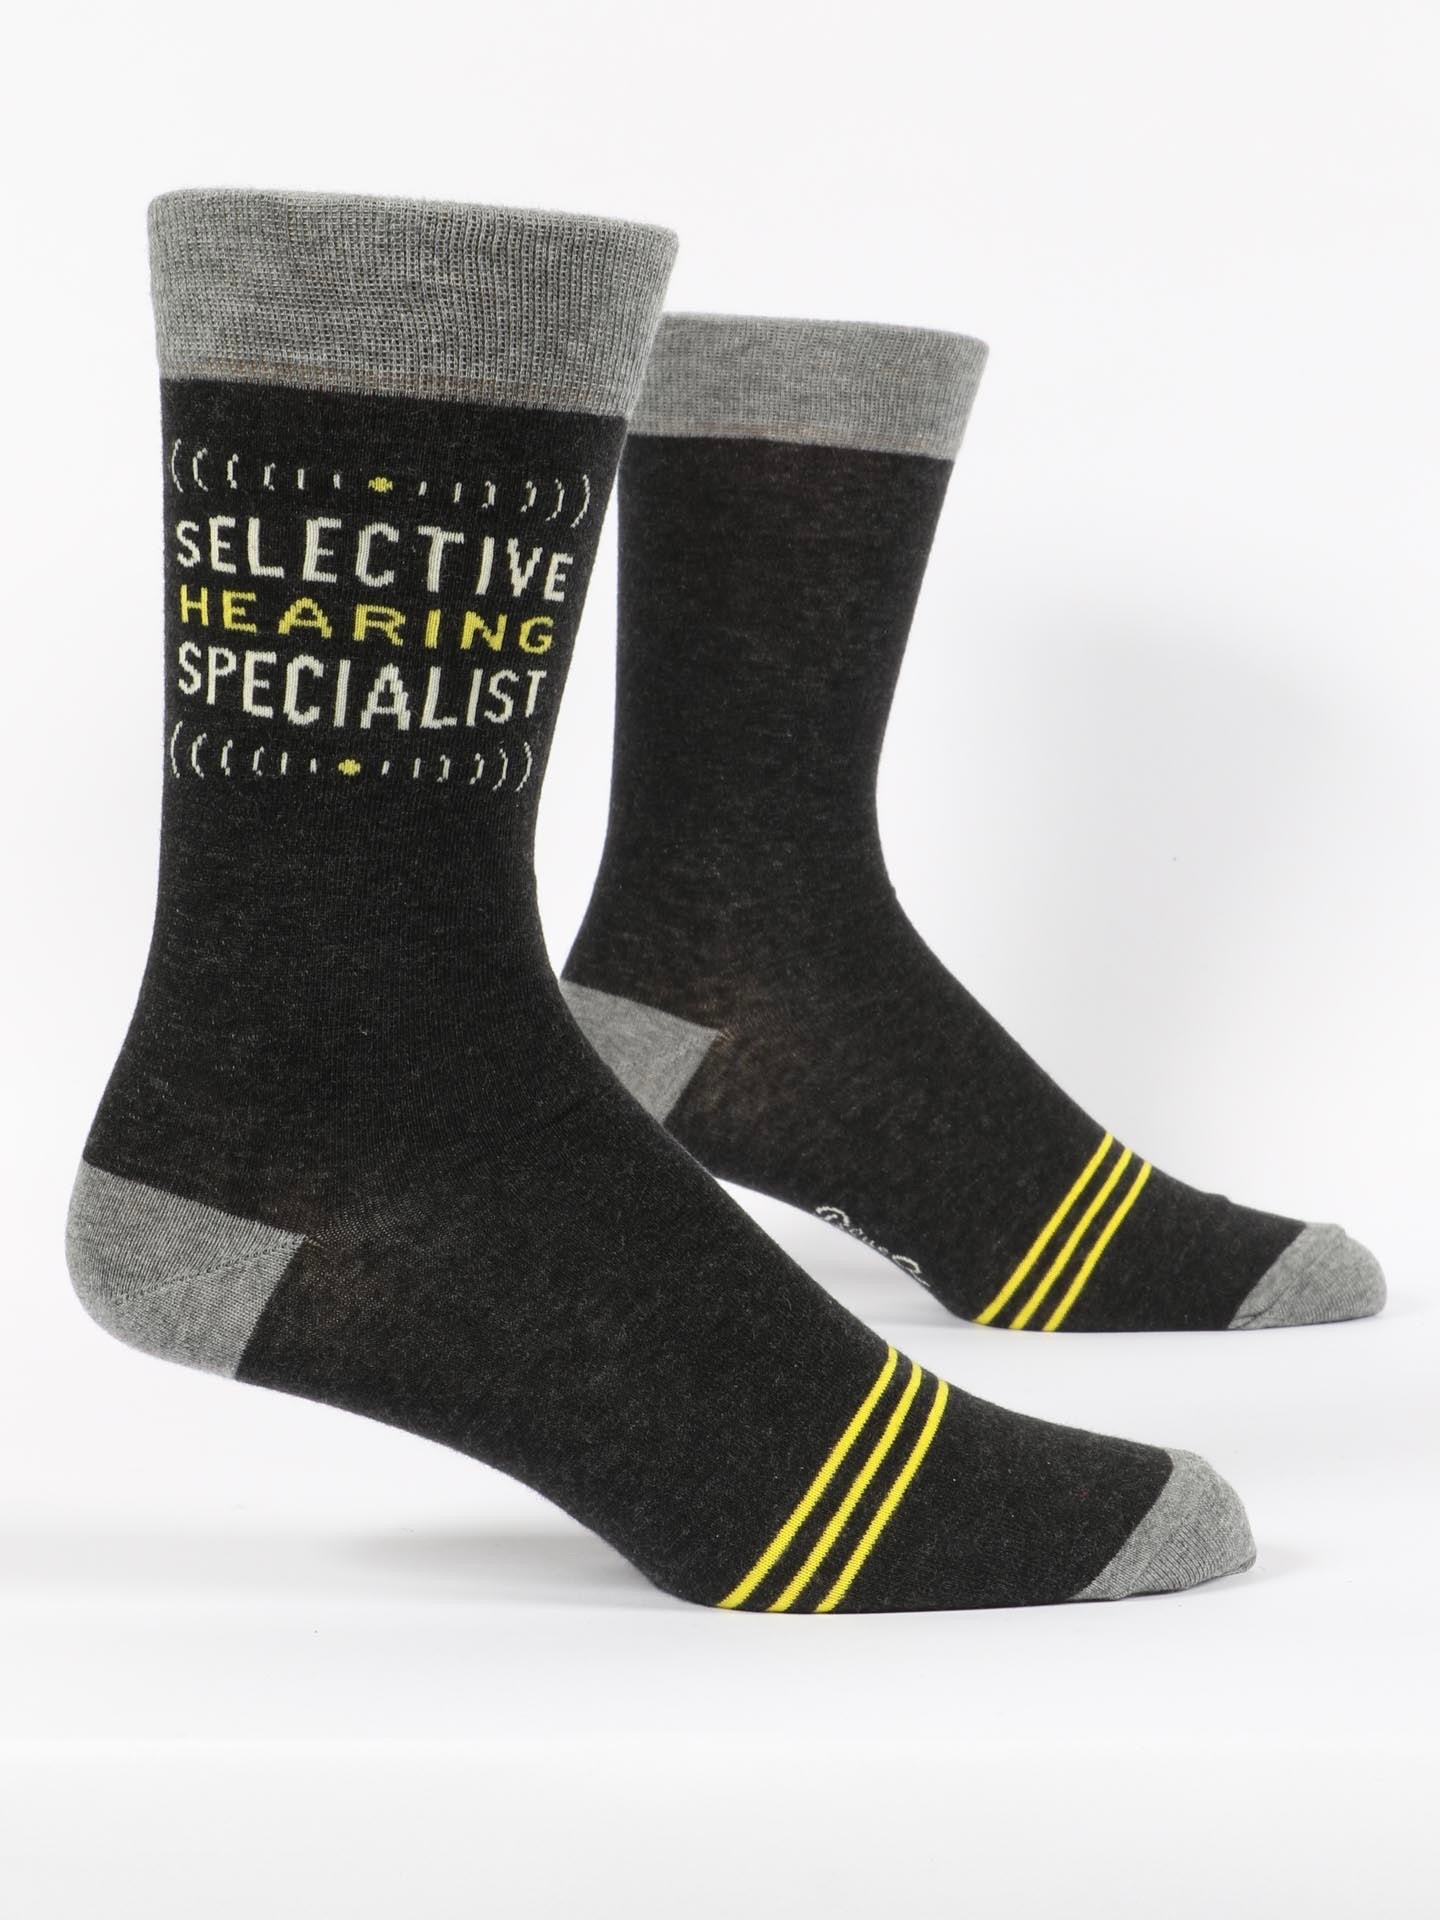 Men’s Selective Hearing Specialist Crew Socks